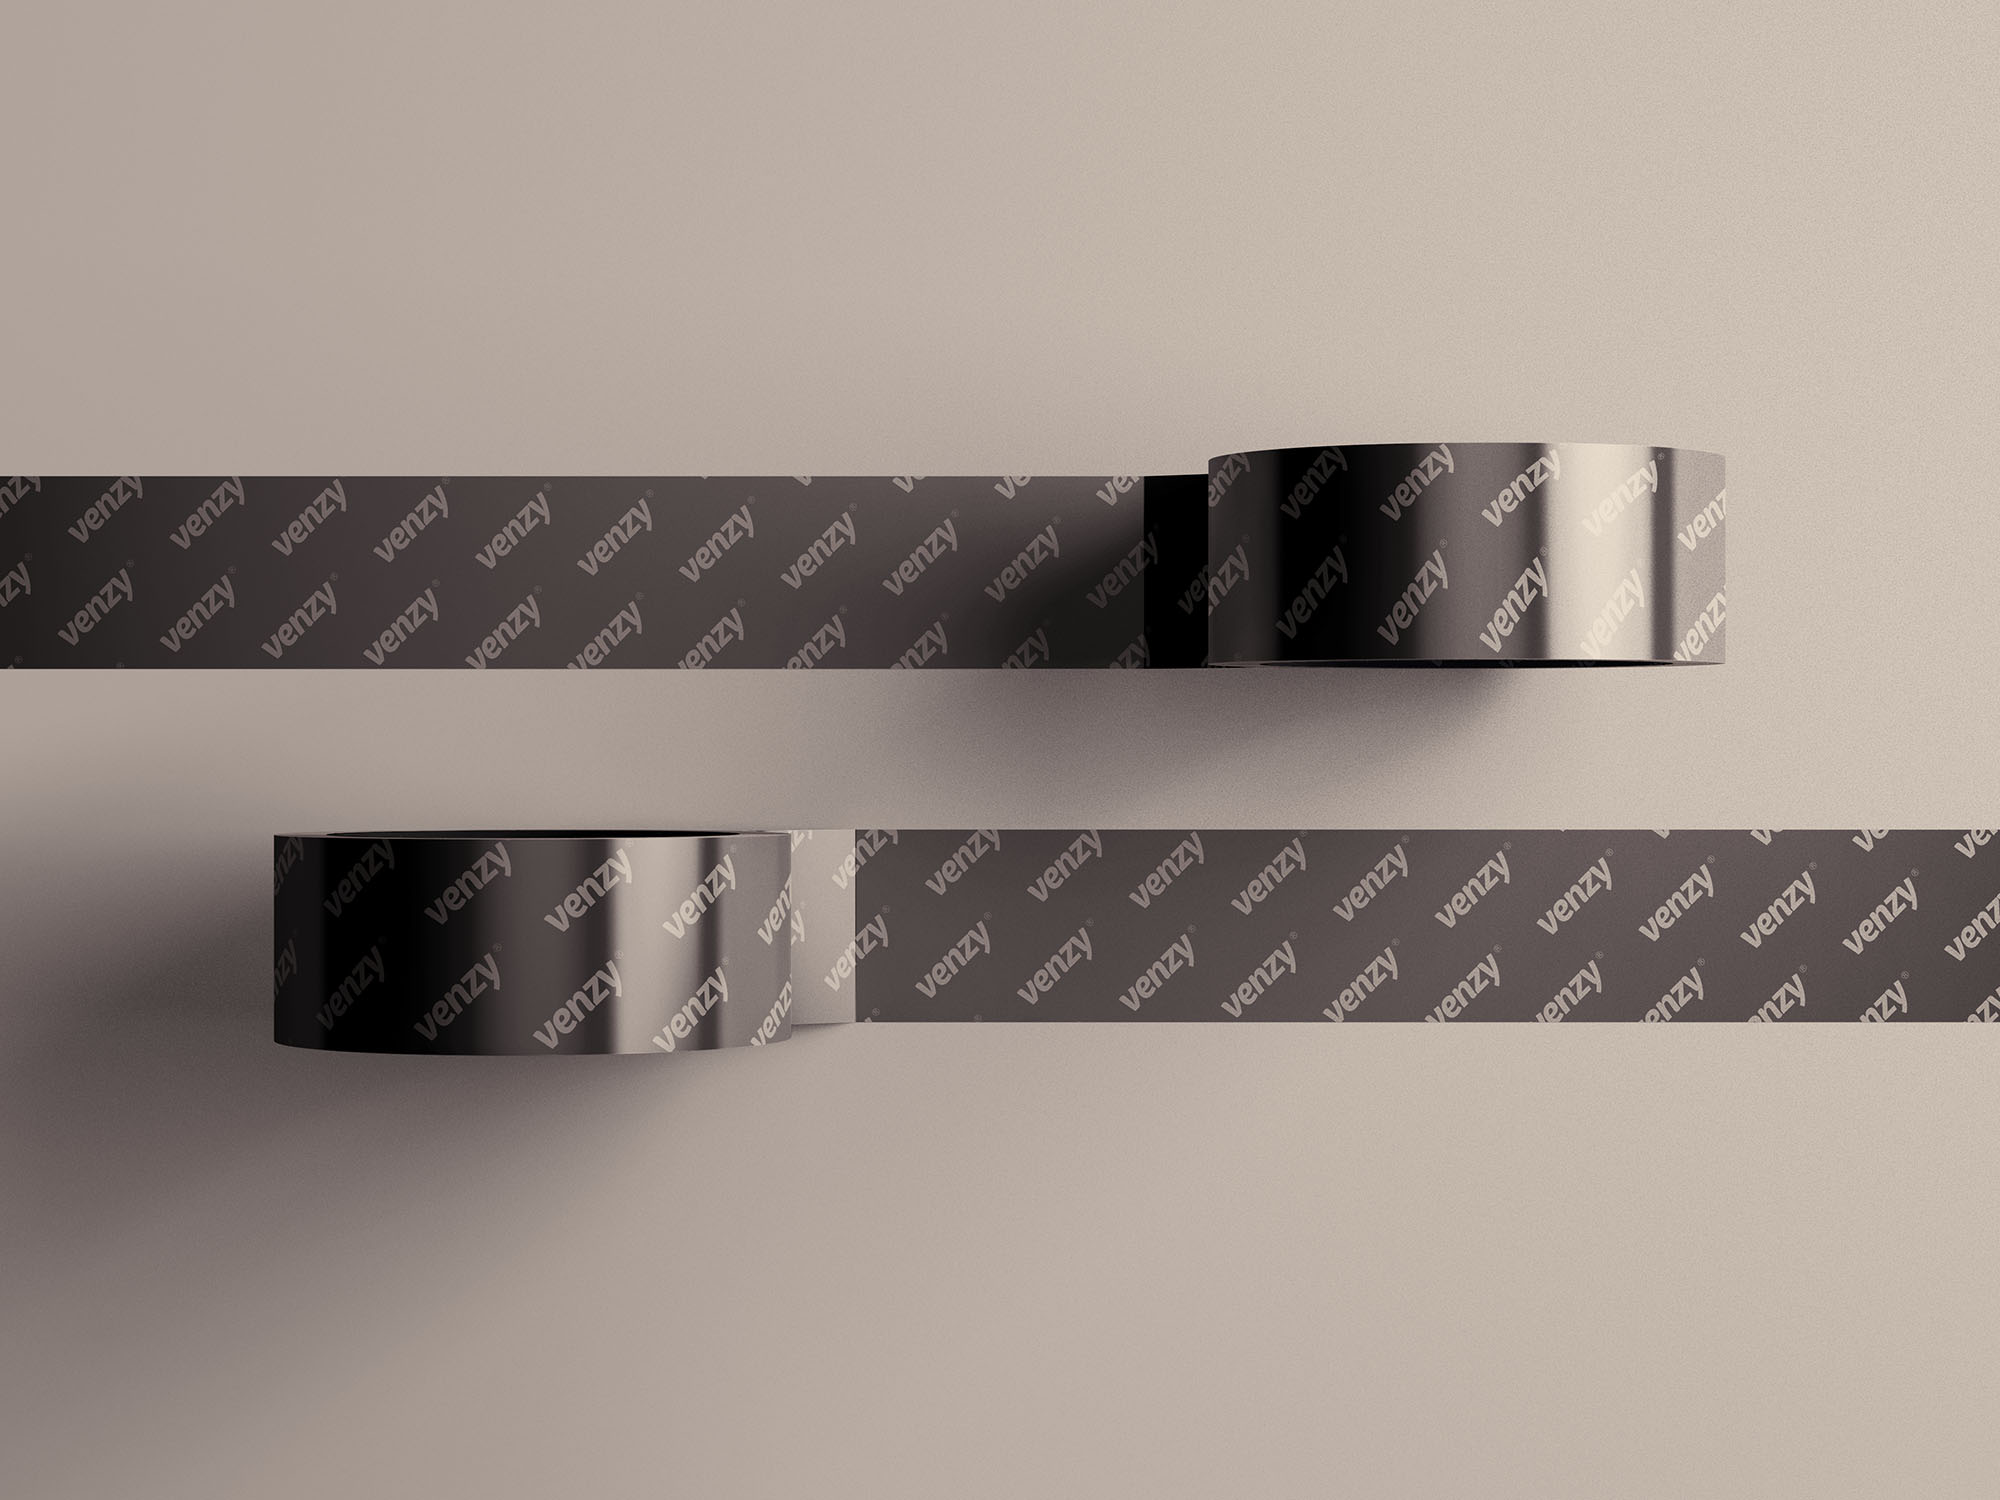 管道胶带图案设计样机模板 Duct Tape Mockup插图(2)